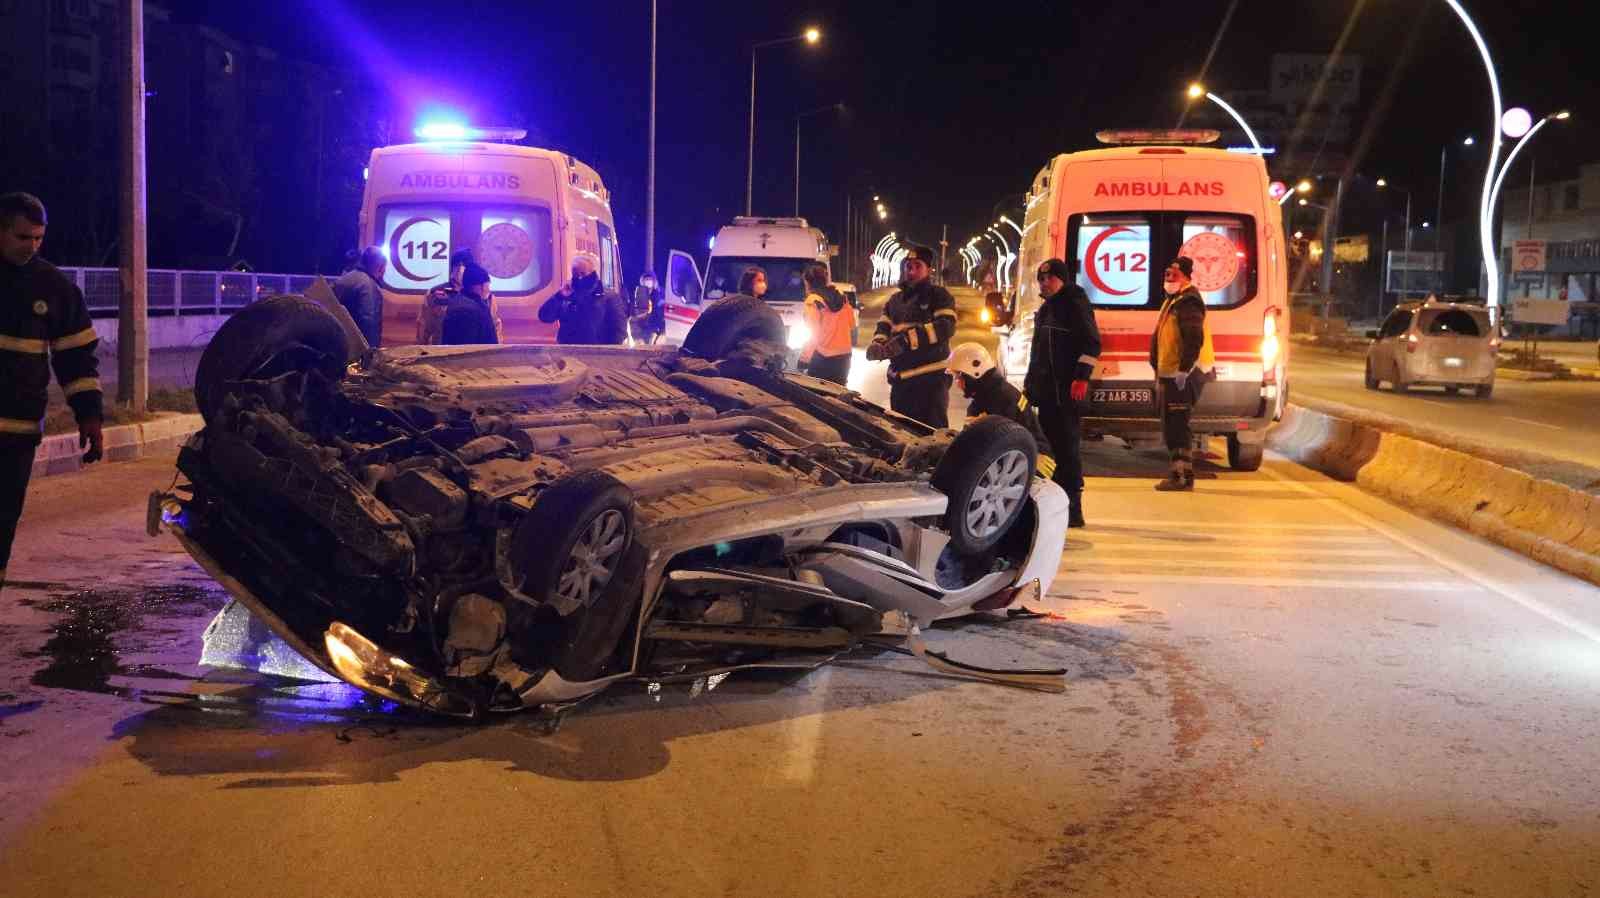 Edirne’de feci kaza: 1 ölü, 3 yaralı #edirne